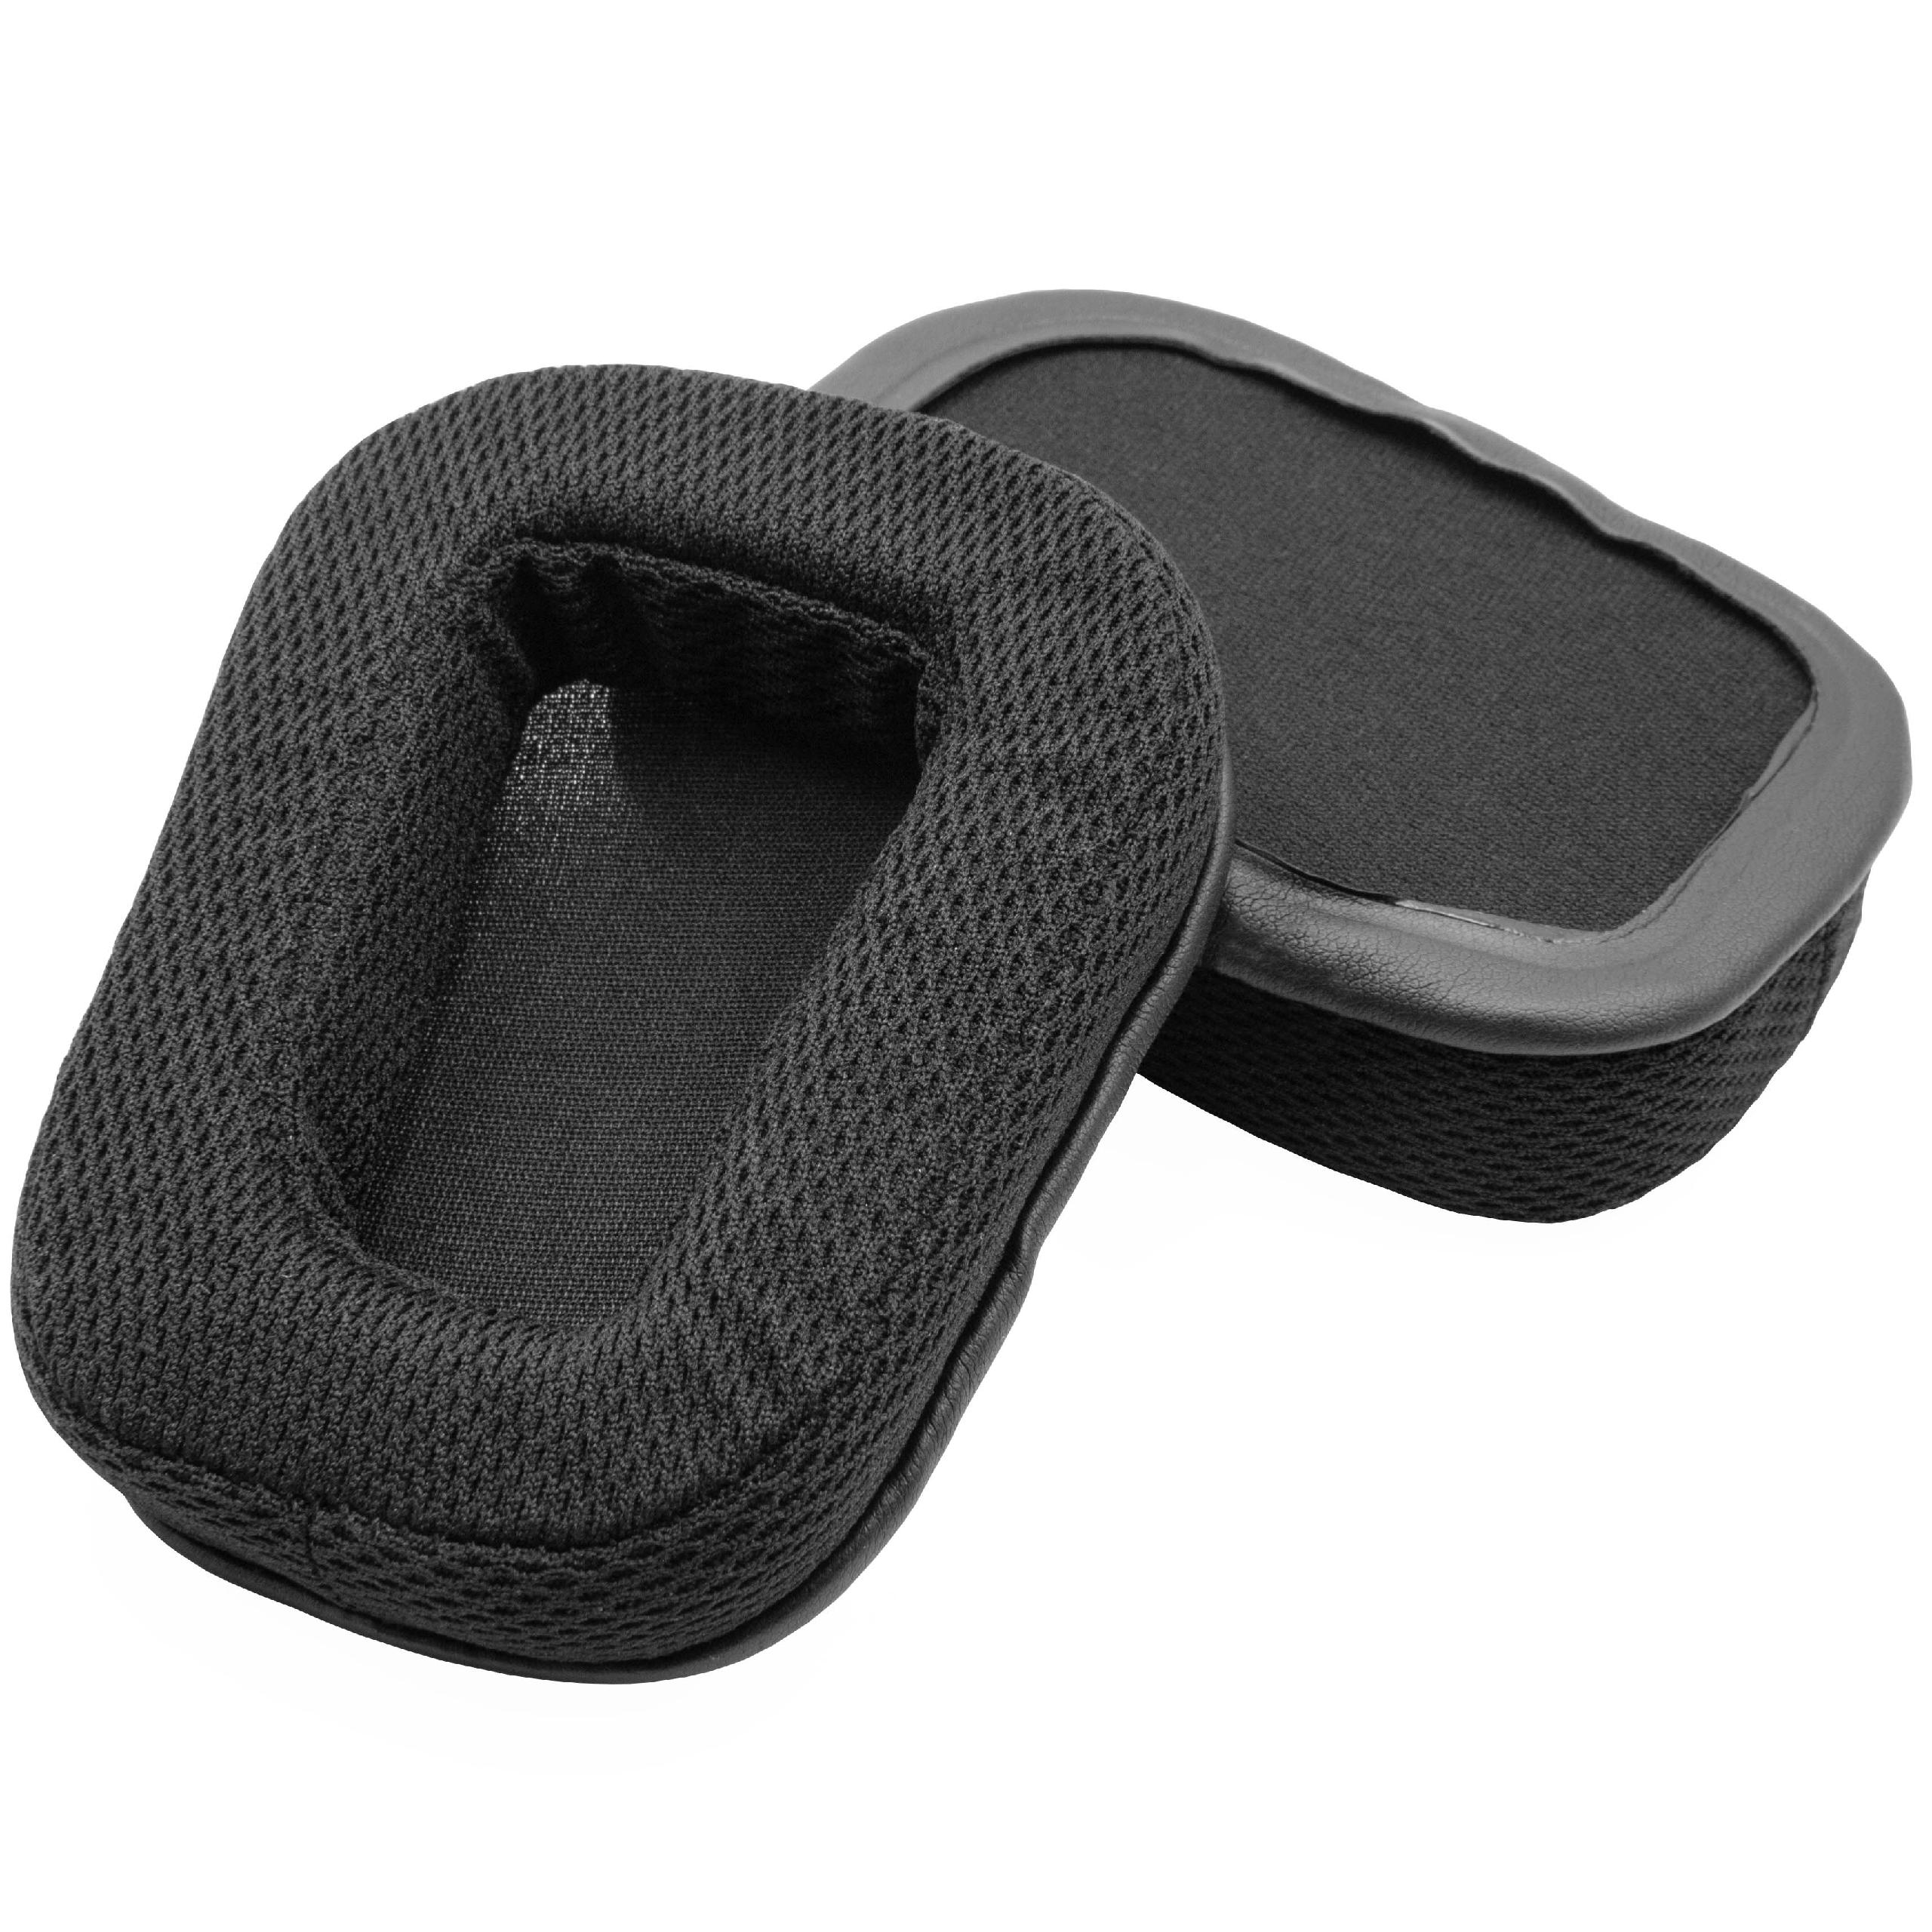 Ear Pads suitable for Logitech G933 Headphones etc. - foam, 18 mm thick